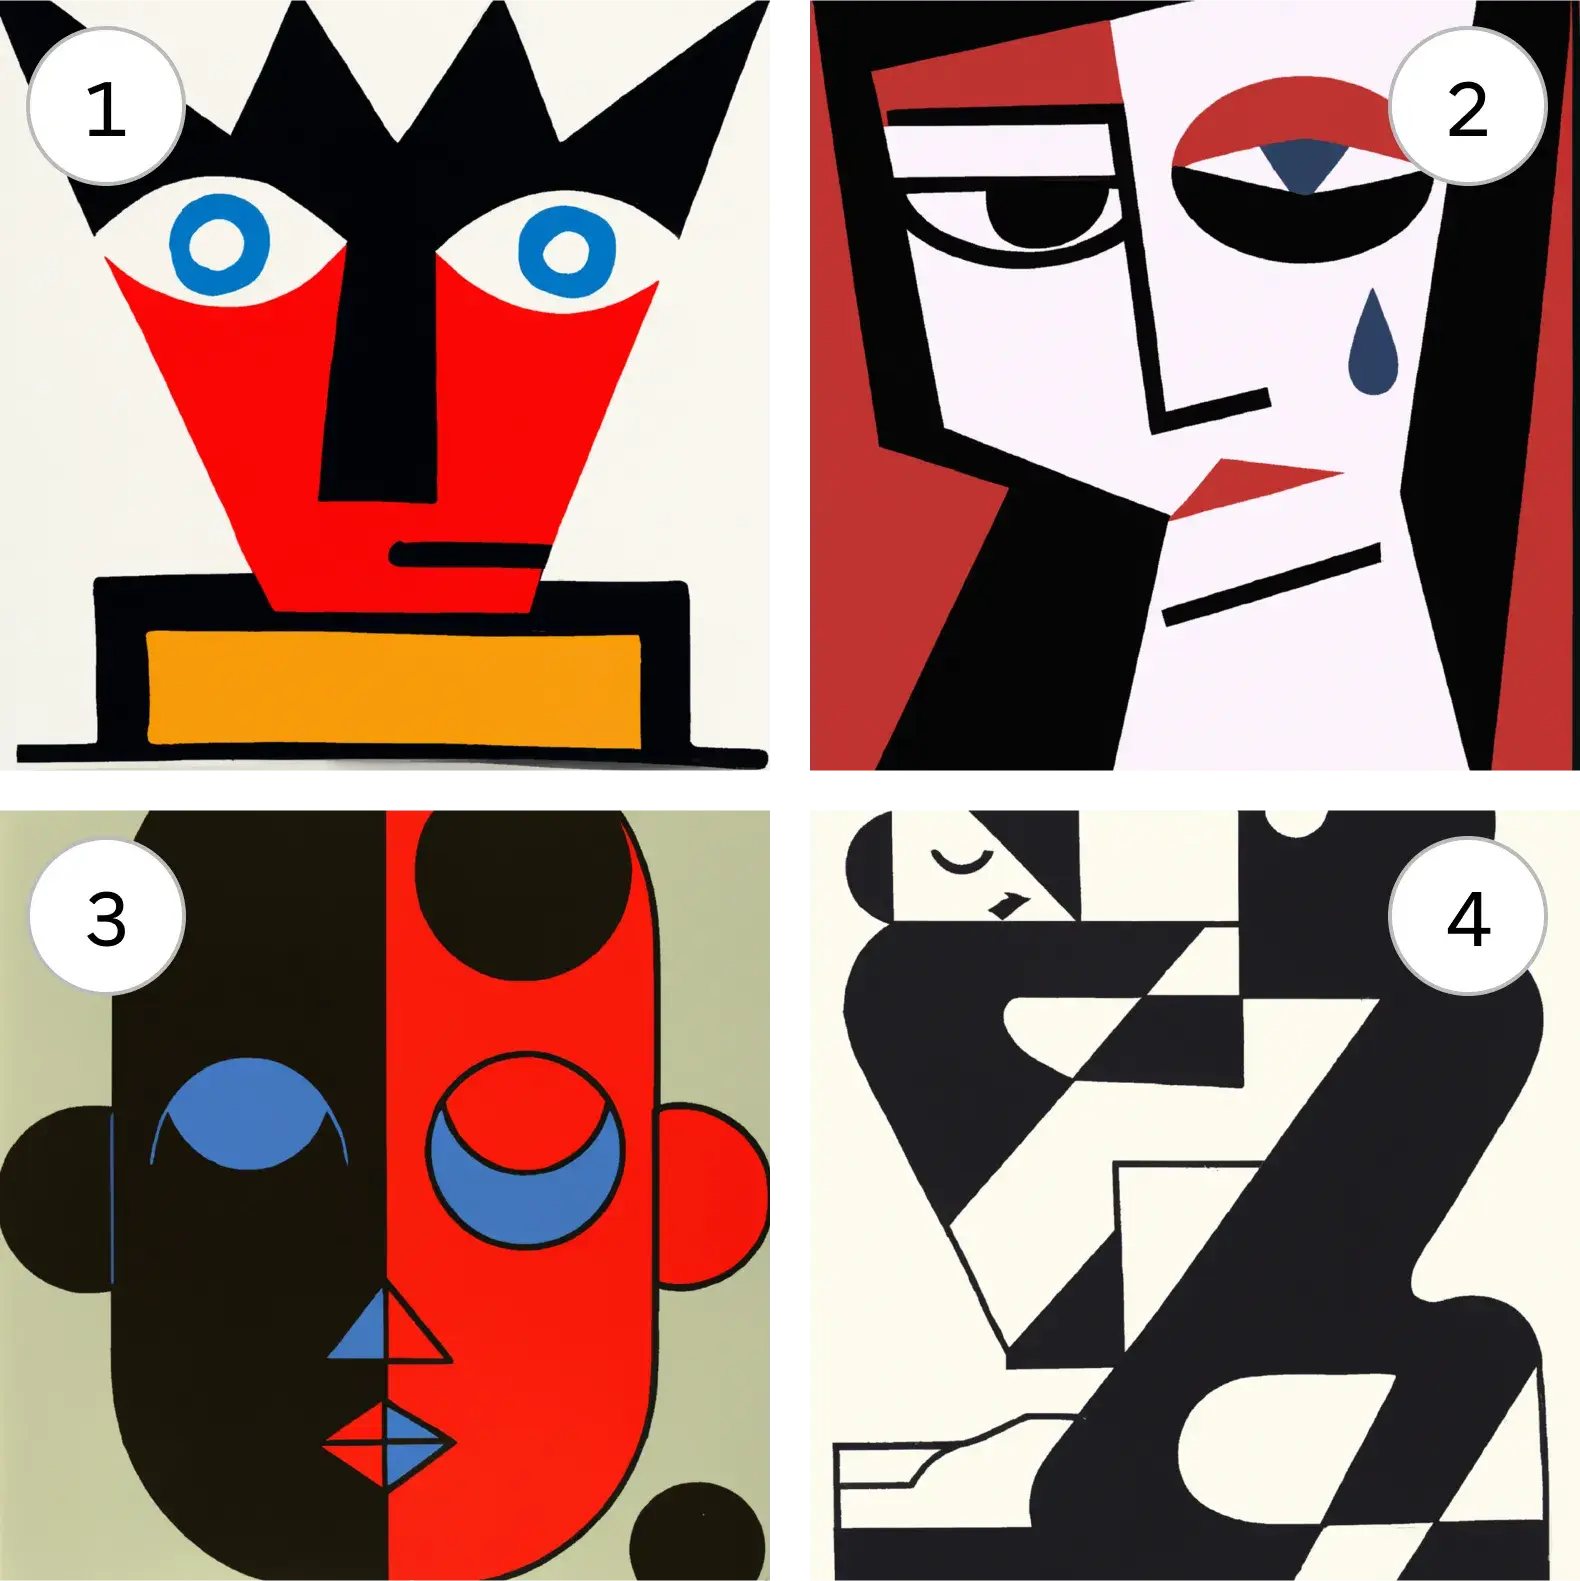 Quatre images différentes dans le style Bauhaus, créées à l’aide de légères variations sur la même invite de texte.